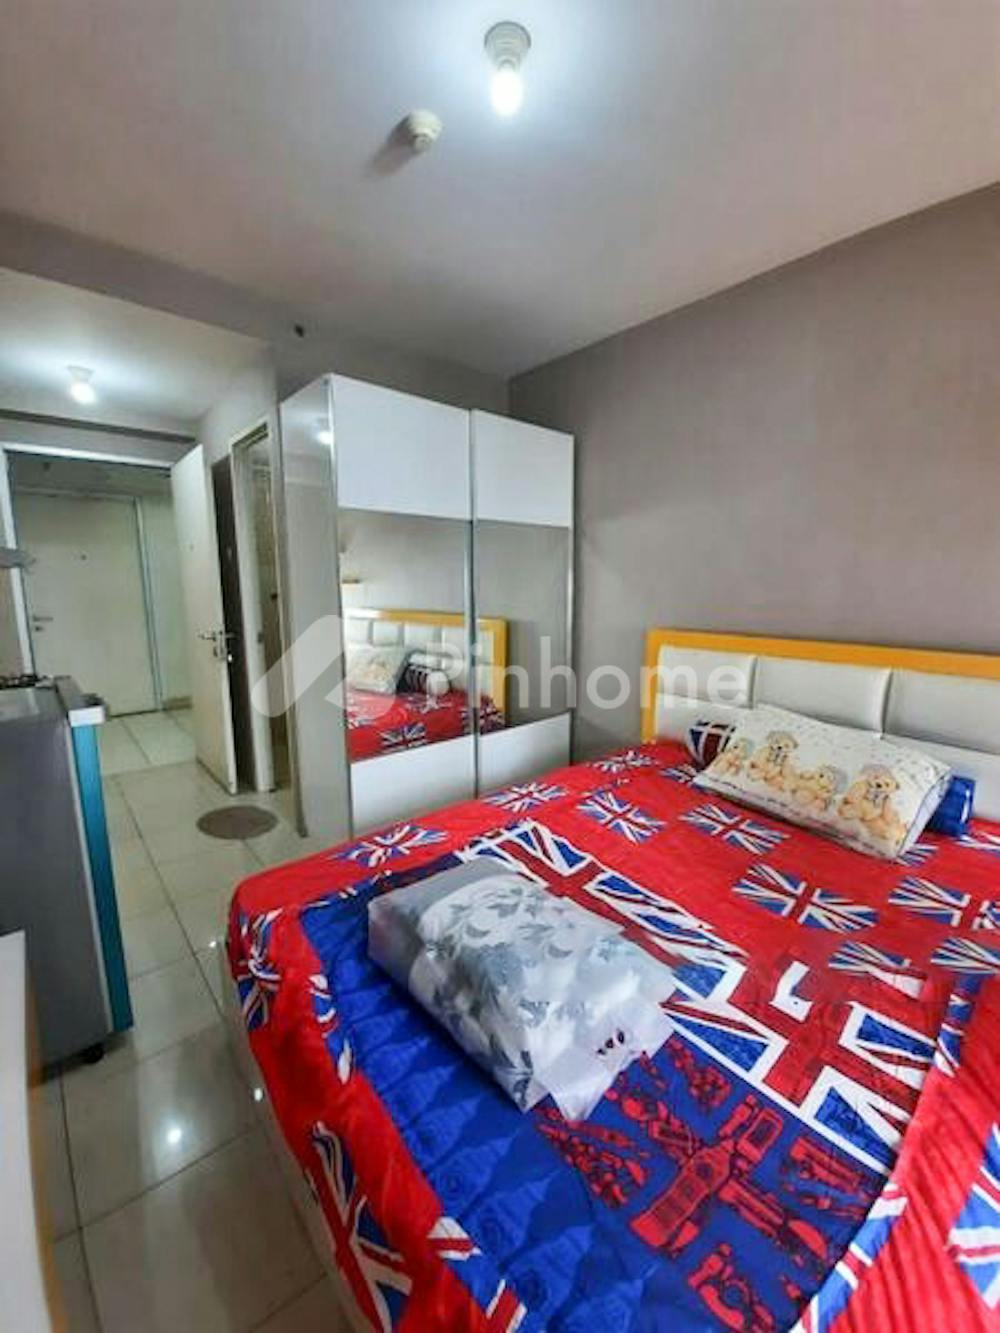 disewakan apartemen siap pakai di apartemen greenbay pluit, jl. pluit karang ayu 1 no.b1, rw.2